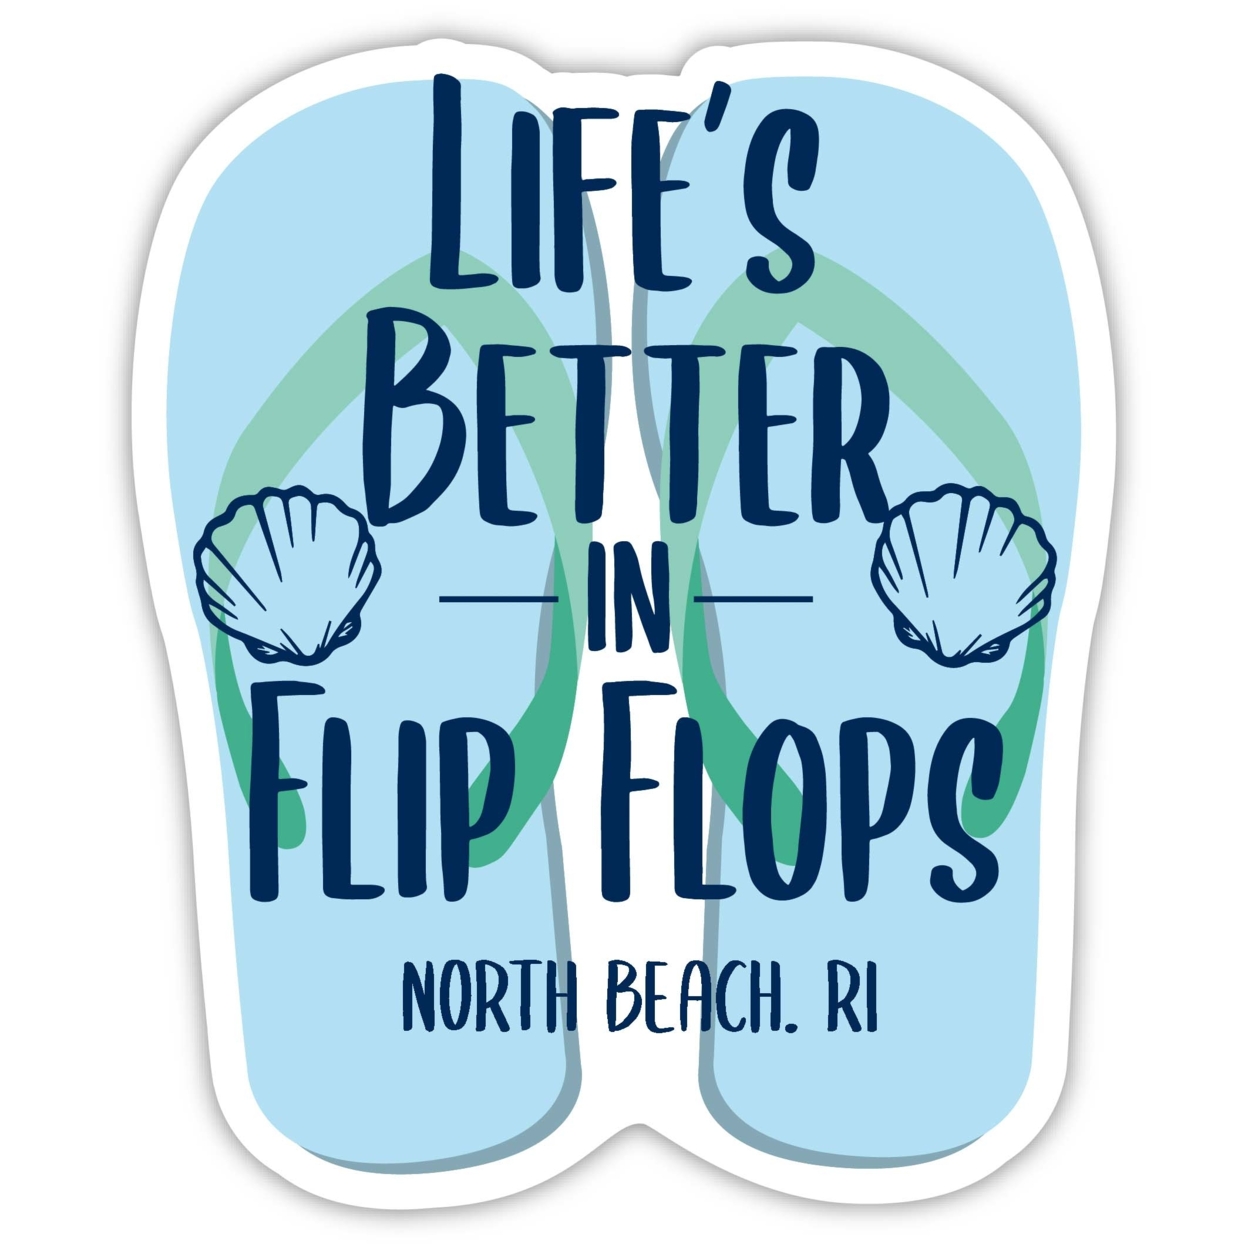 North Beach Rhode Island Souvenir 4 Inch Vinyl Decal Sticker Flip Flop Design